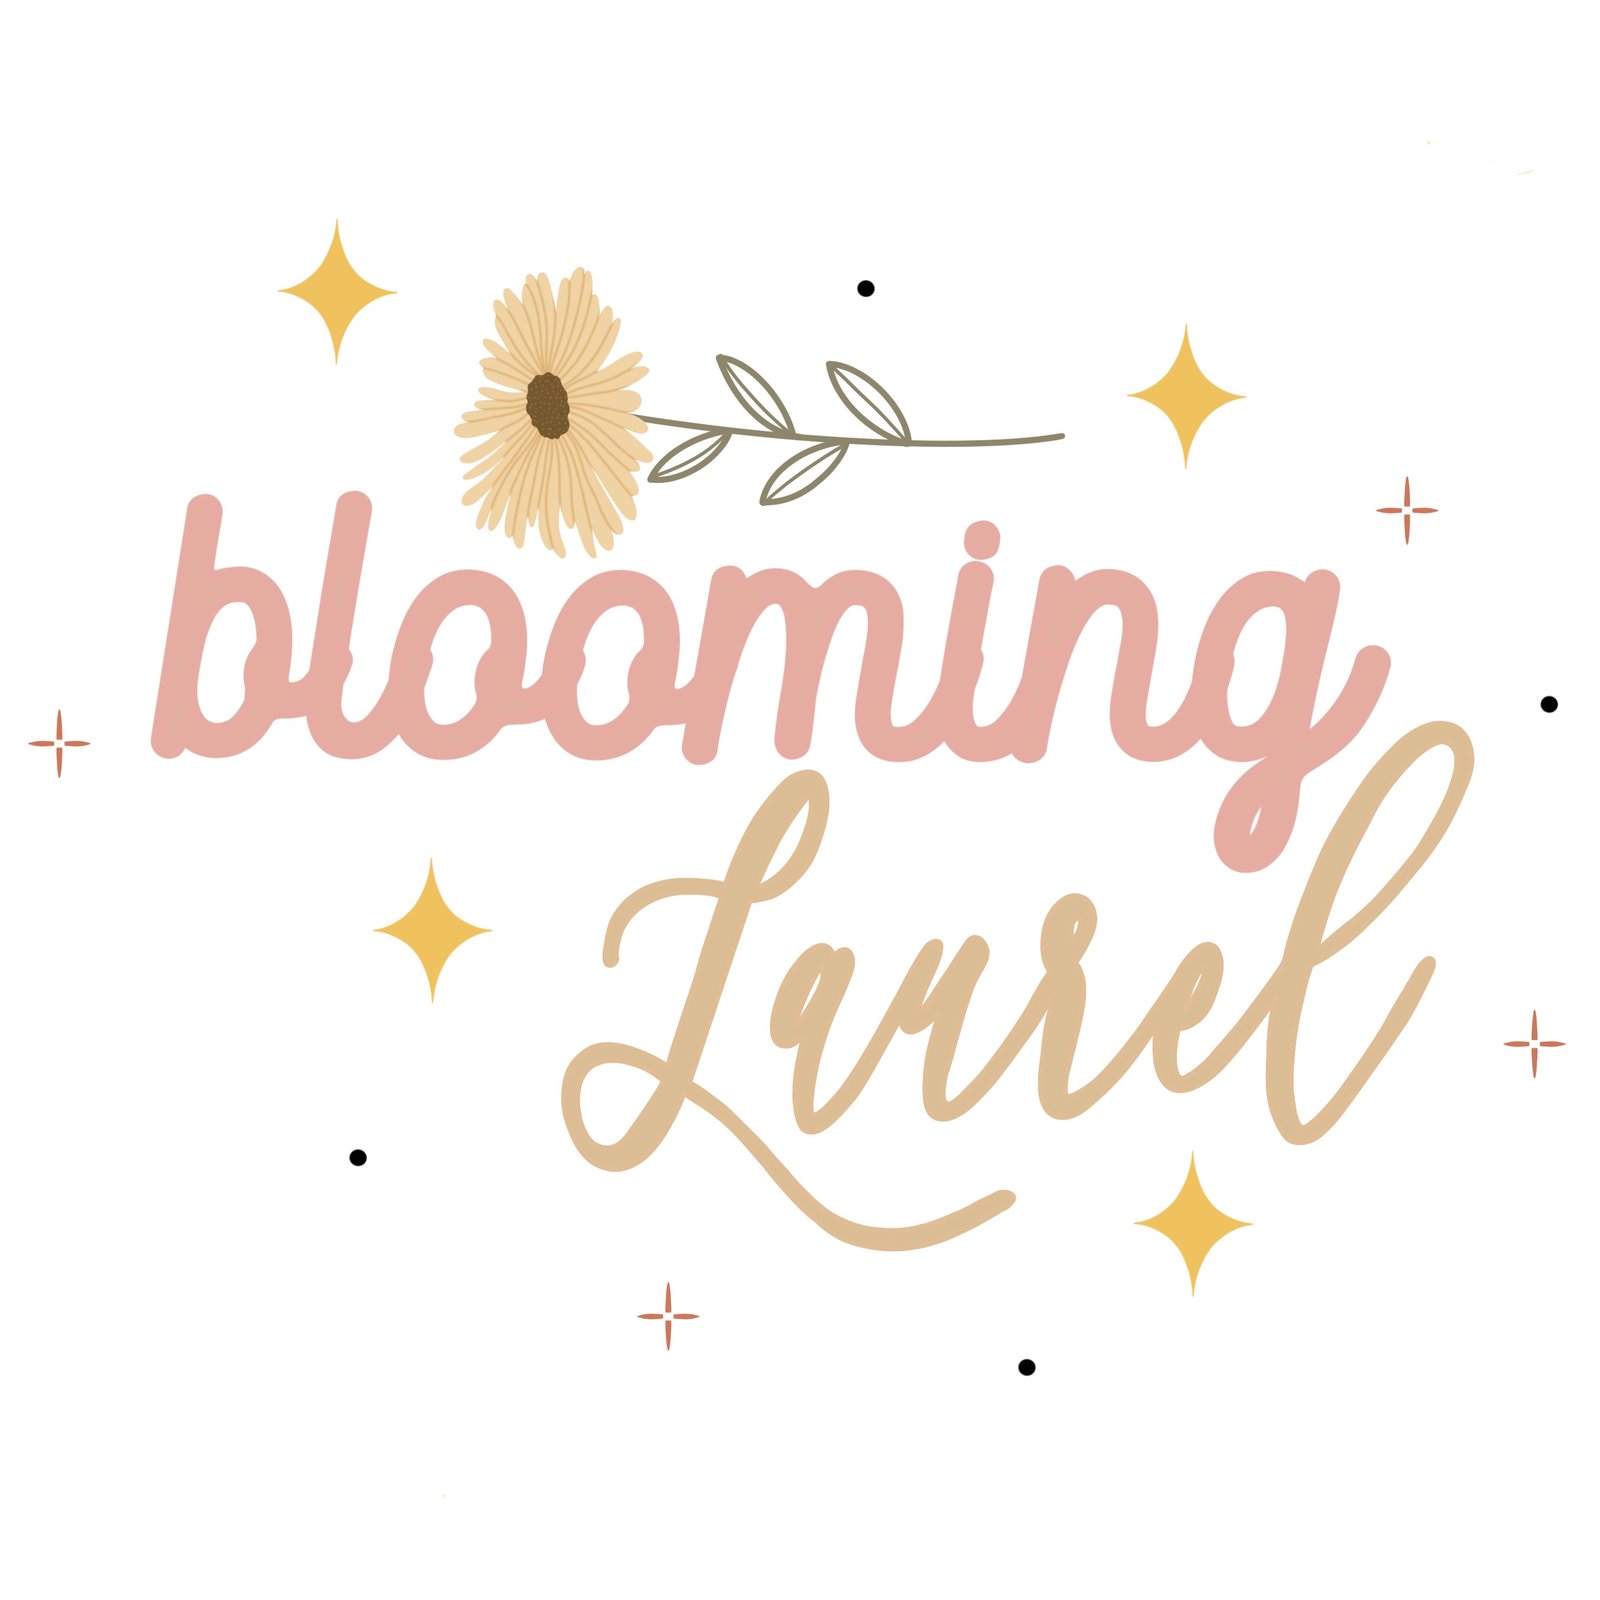 Blooming Laurel Tree